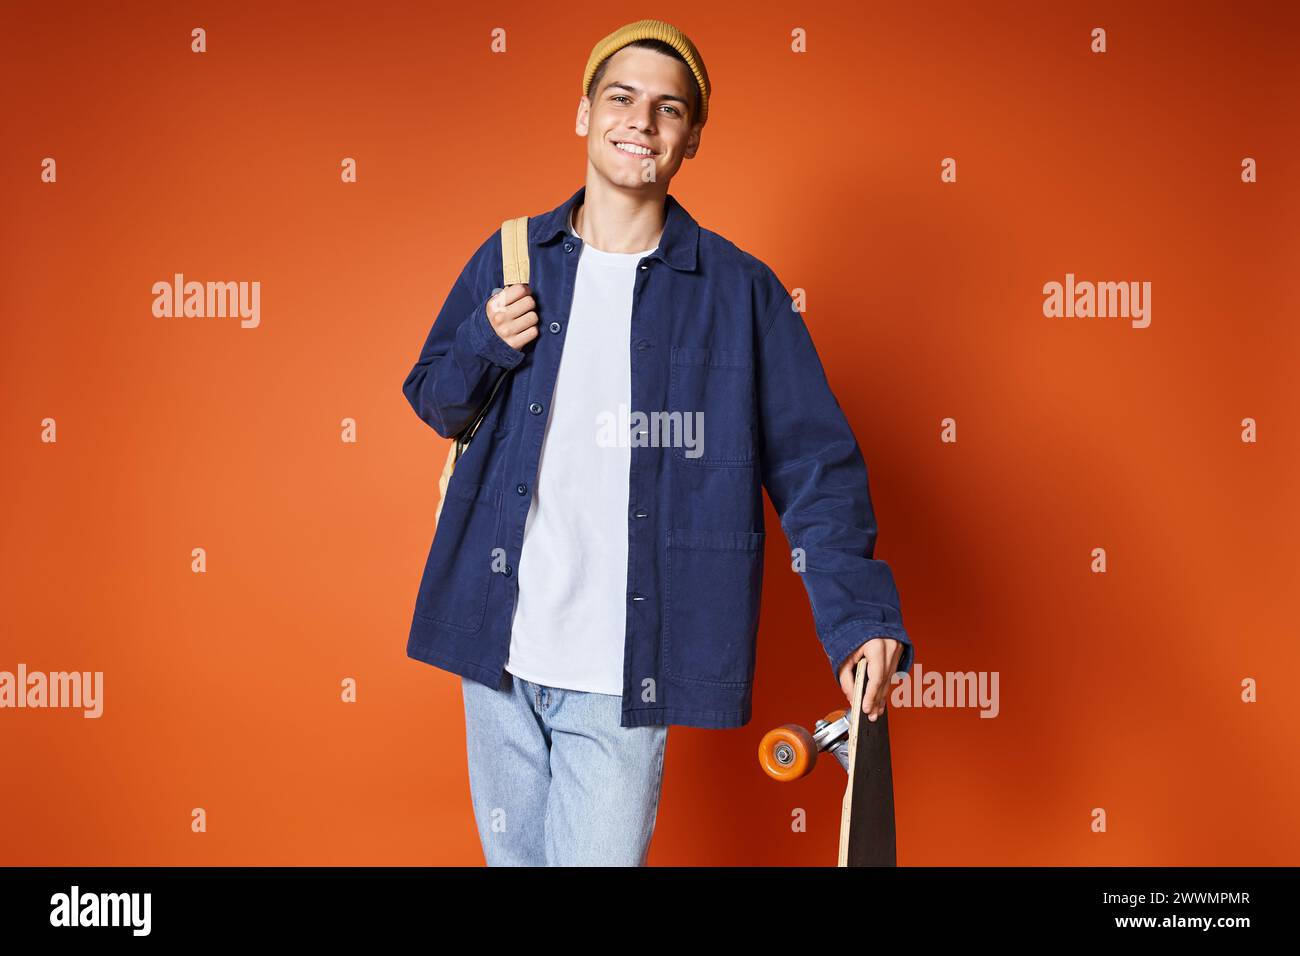 Charismatischer junger Mann im lässigen Outfit, der mit Skateboard vor Terrakotta-Hintergrund steht Stockfoto